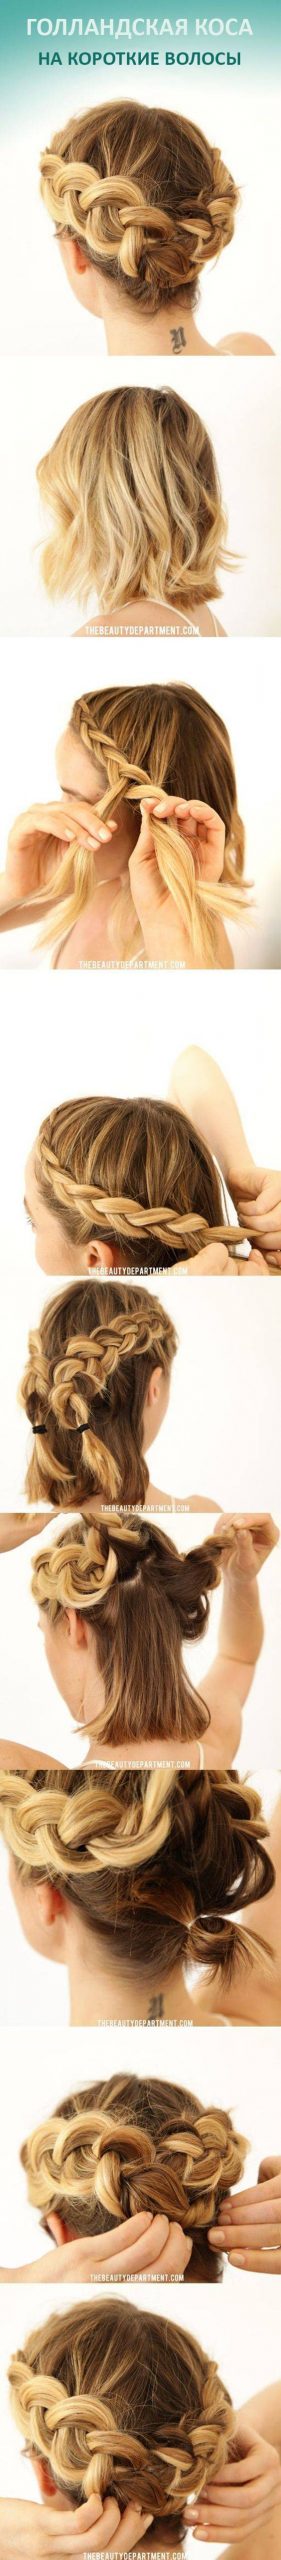 JamAdvice_com_ua_weaving-of-braids-step-by-step-12